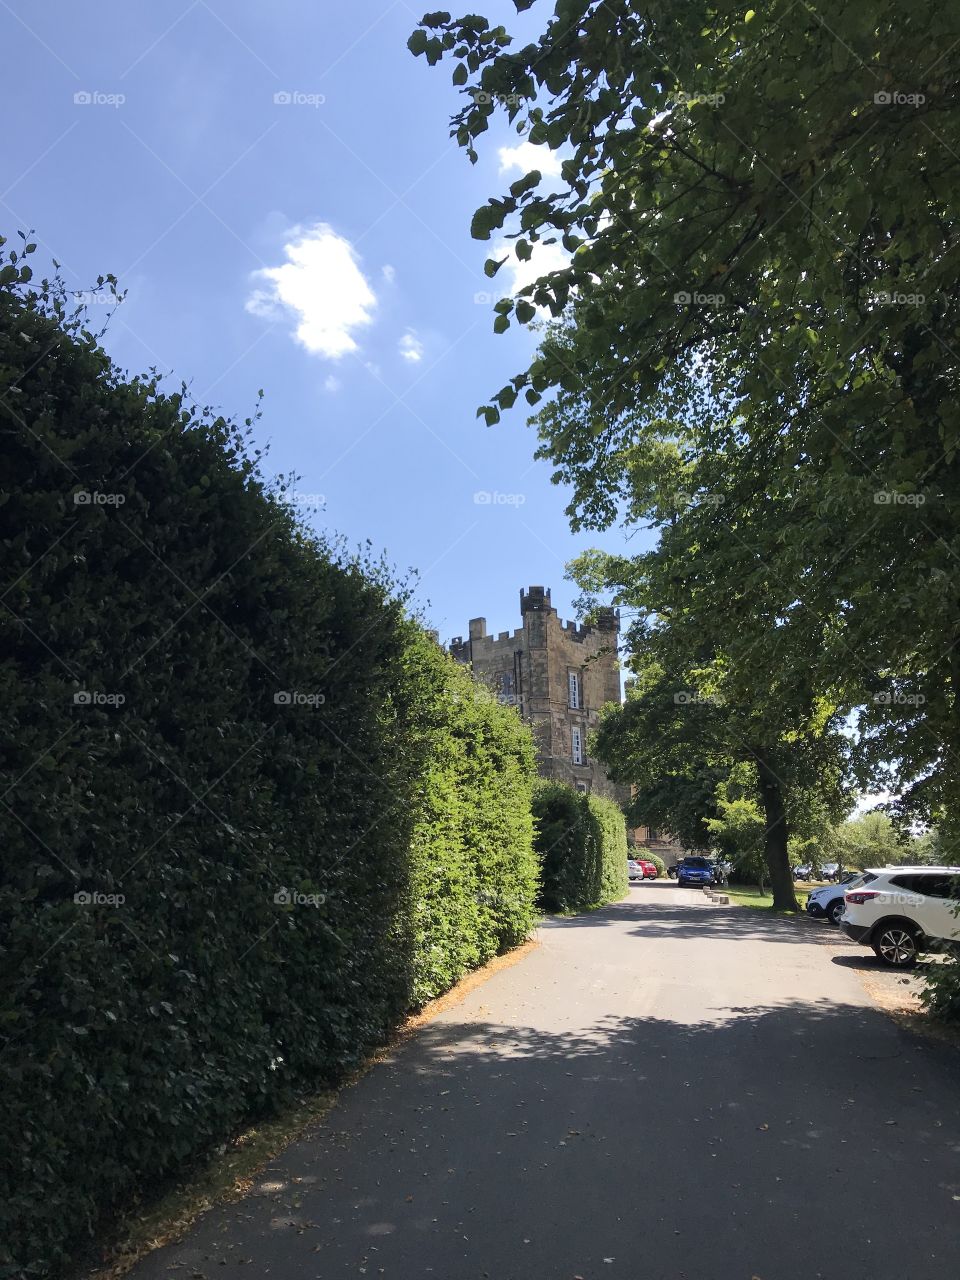 Lumley castle in Durham England 